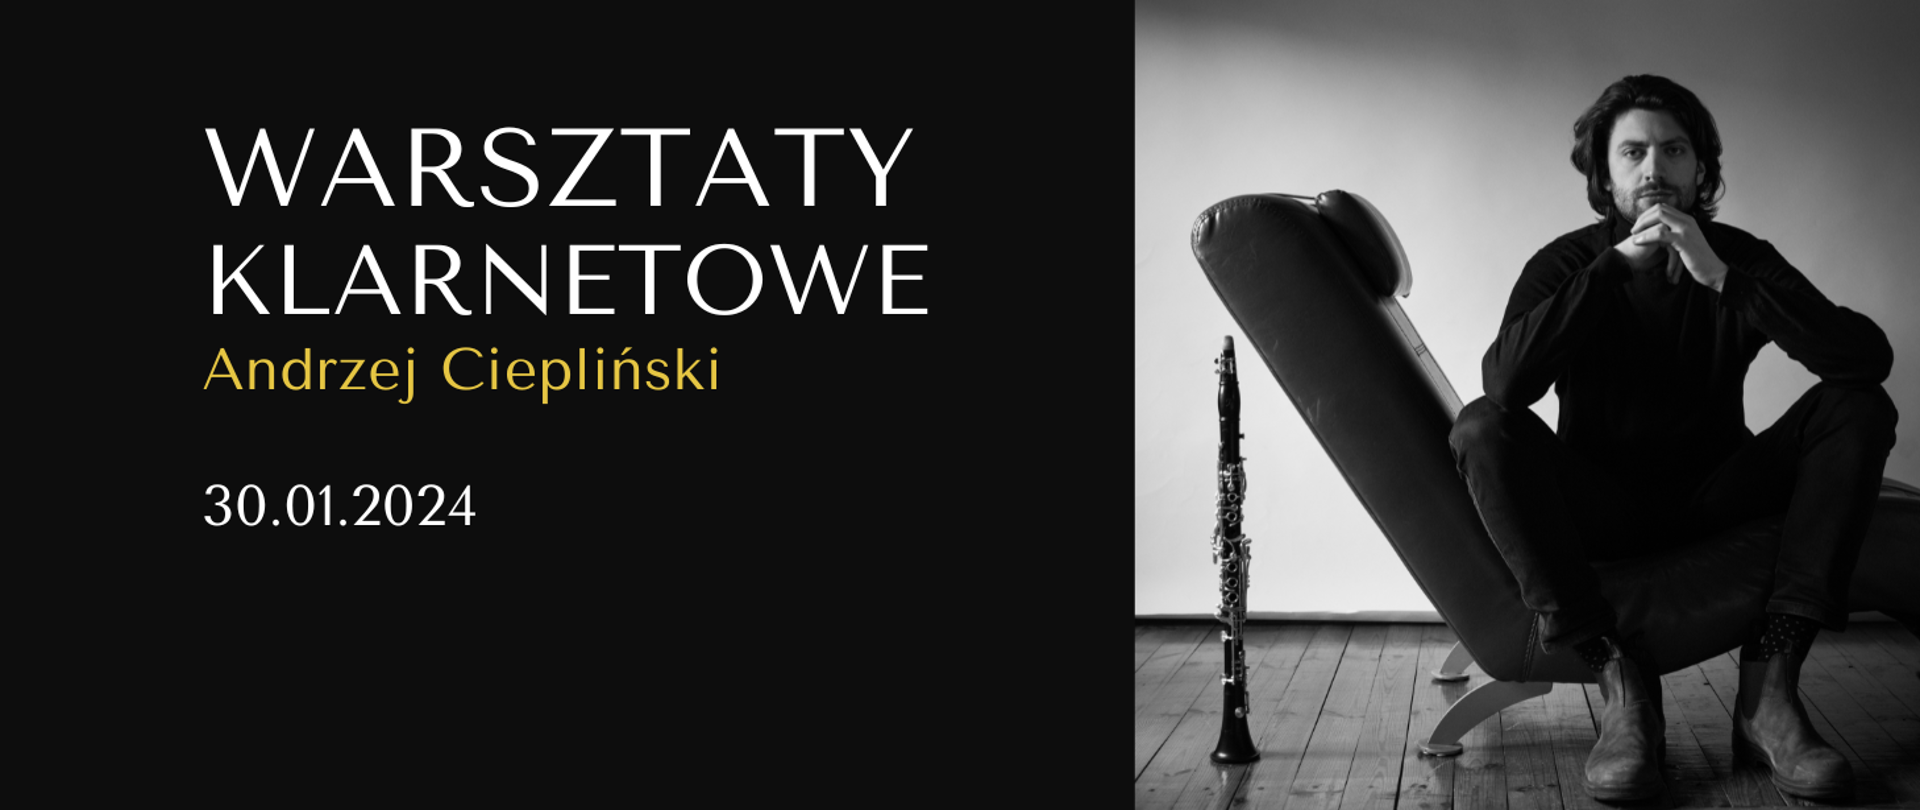 Plakat wydarzenia, po prawej stronie prowadzący Andrzej Ciepliński siedzi na fotelu, obol stoi klarnet